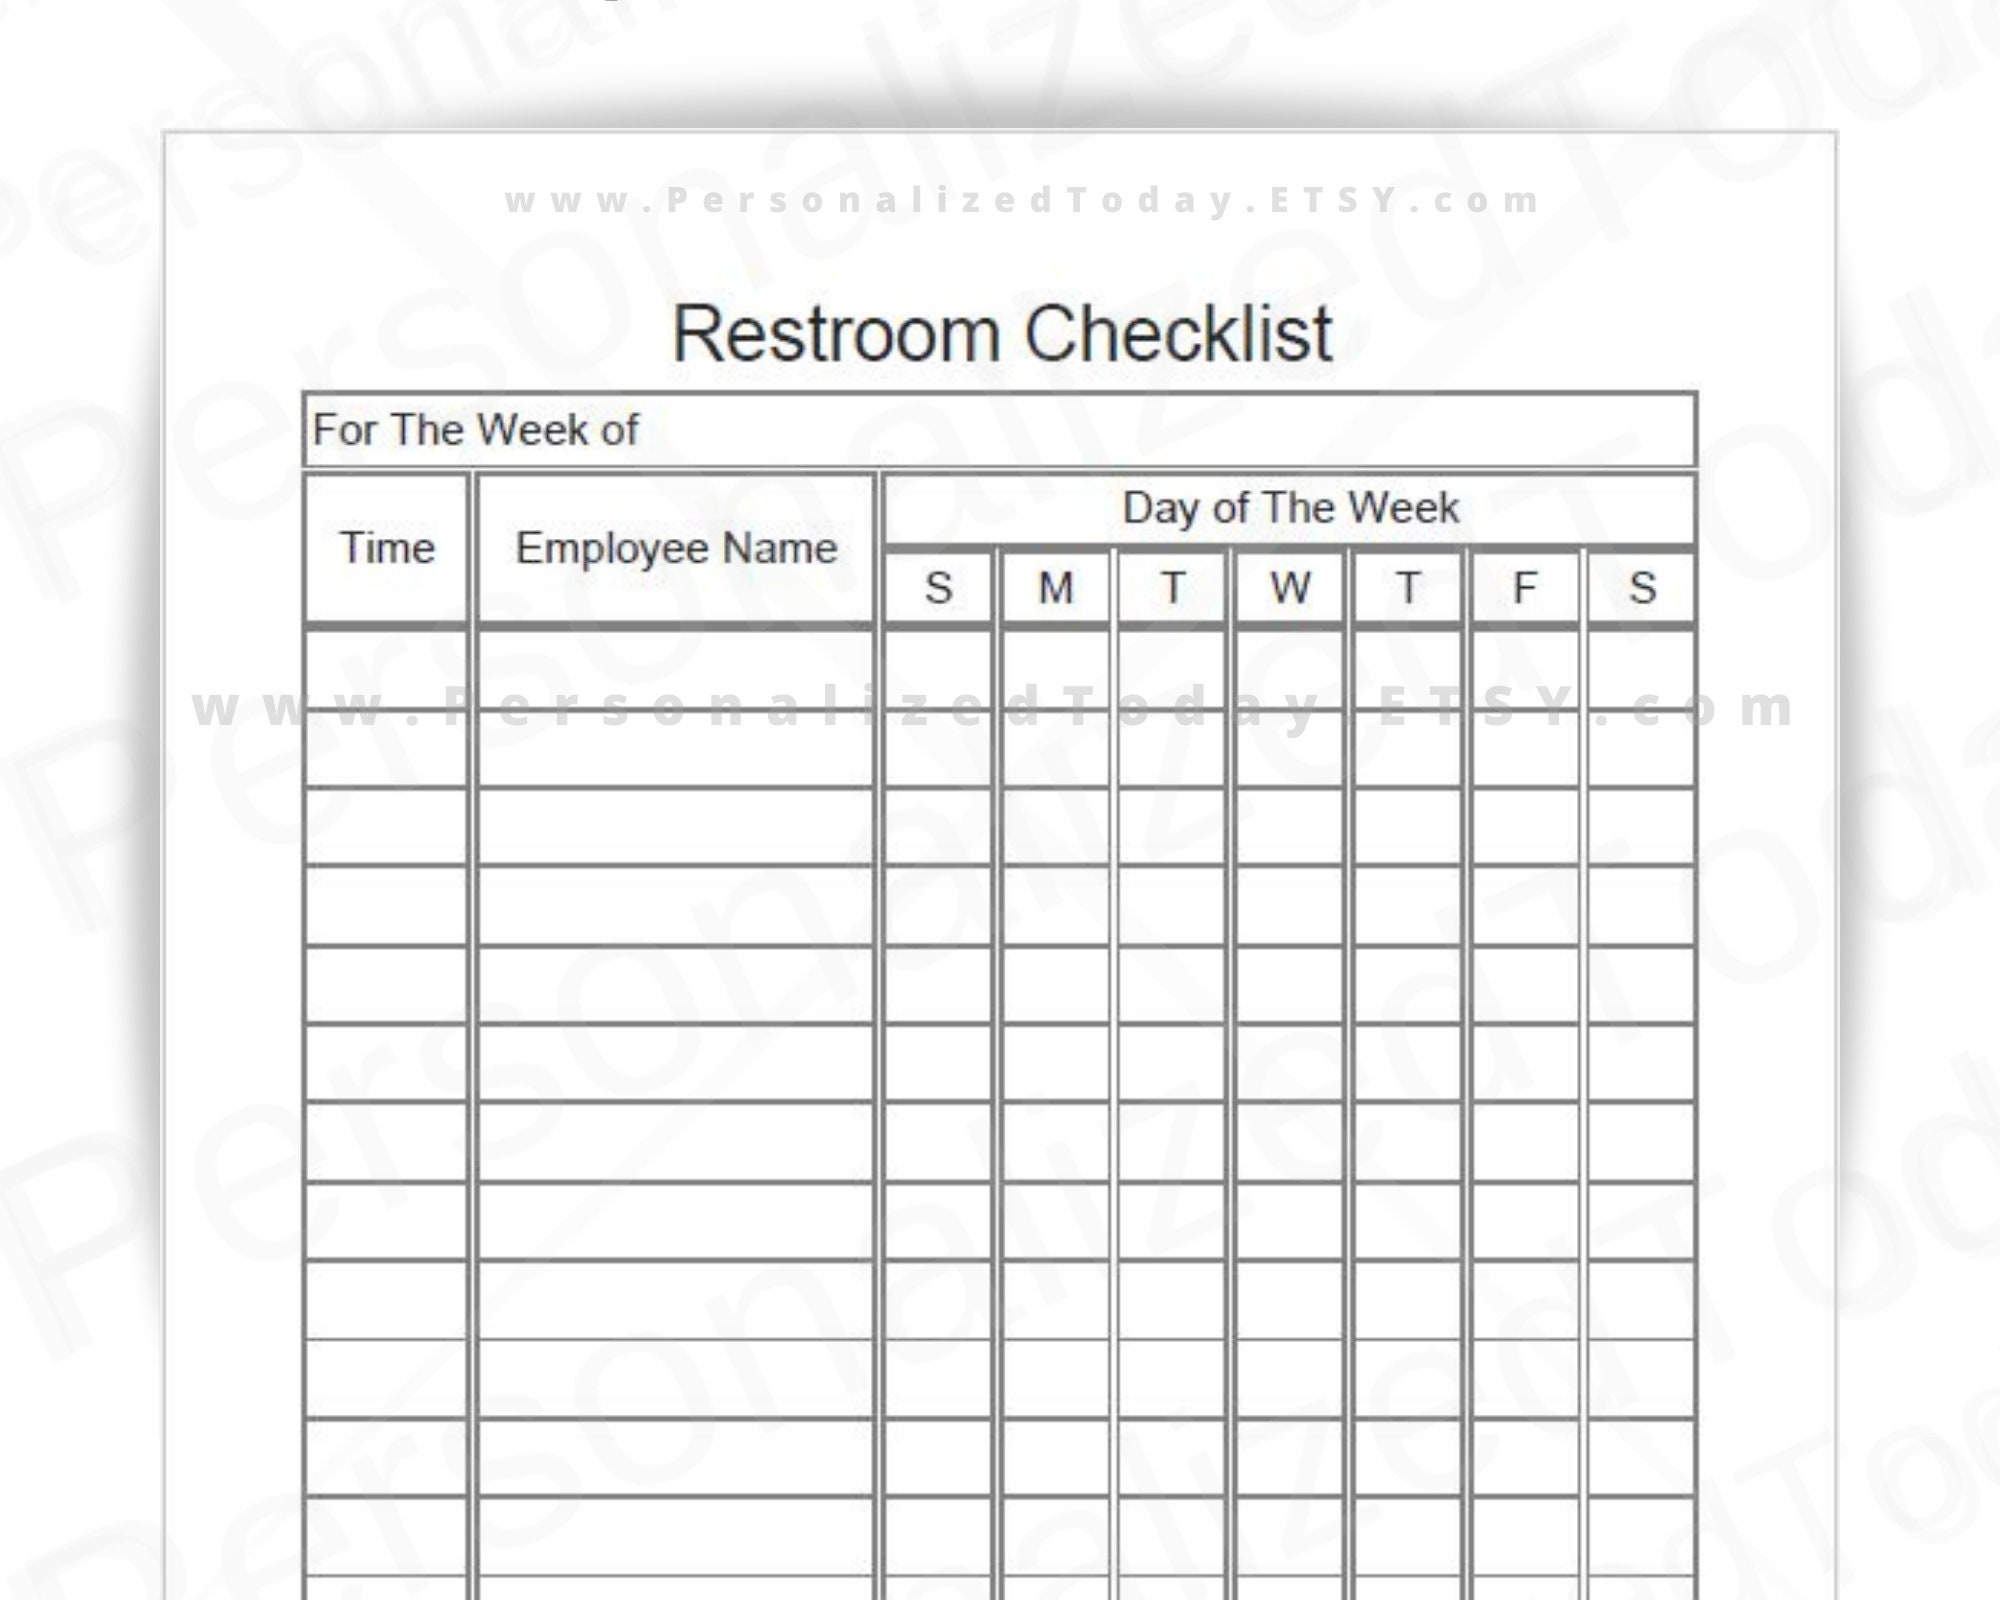 restroom-checklist-ubicaciondepersonas-cdmx-gob-mx